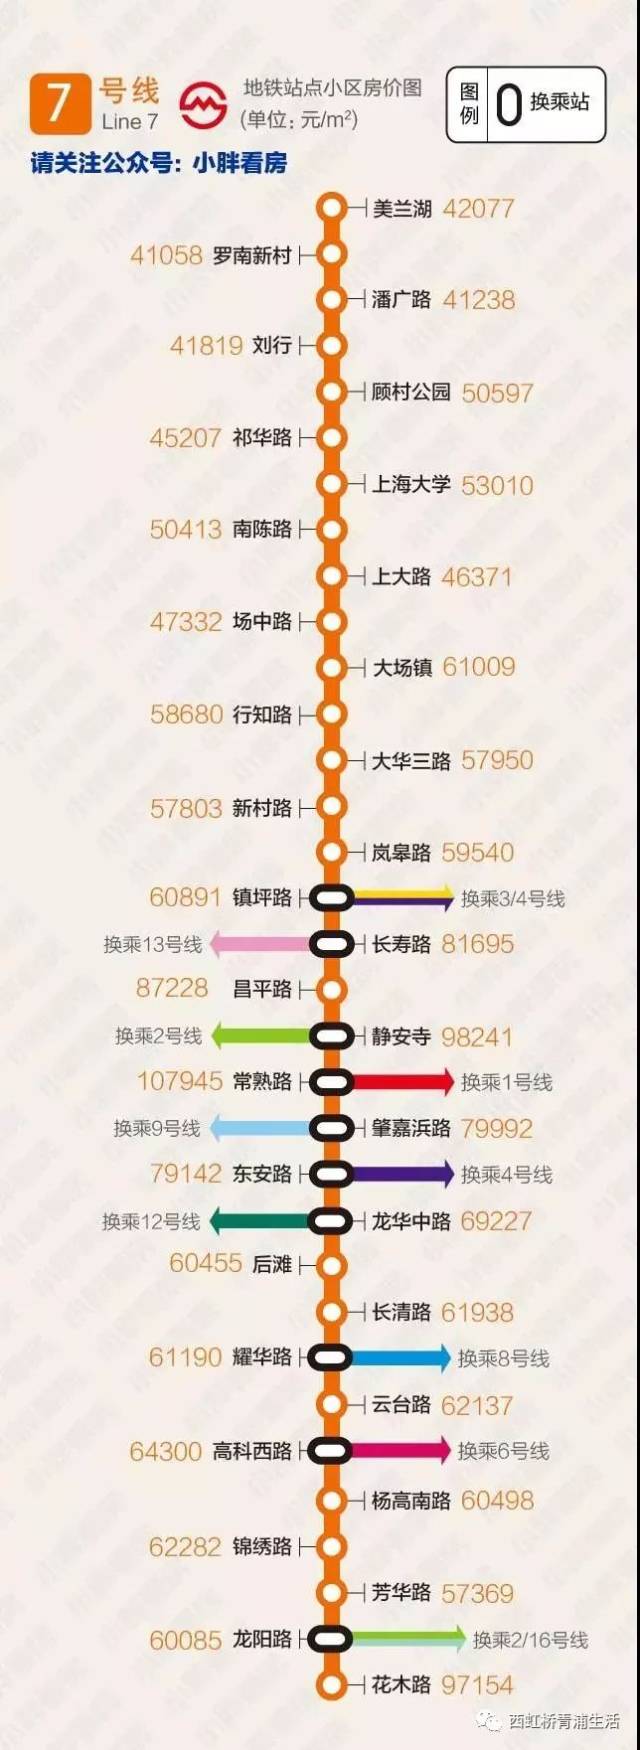 17号线要来啦!12月大青浦及上海地铁沿线各区房价涨还是跌?